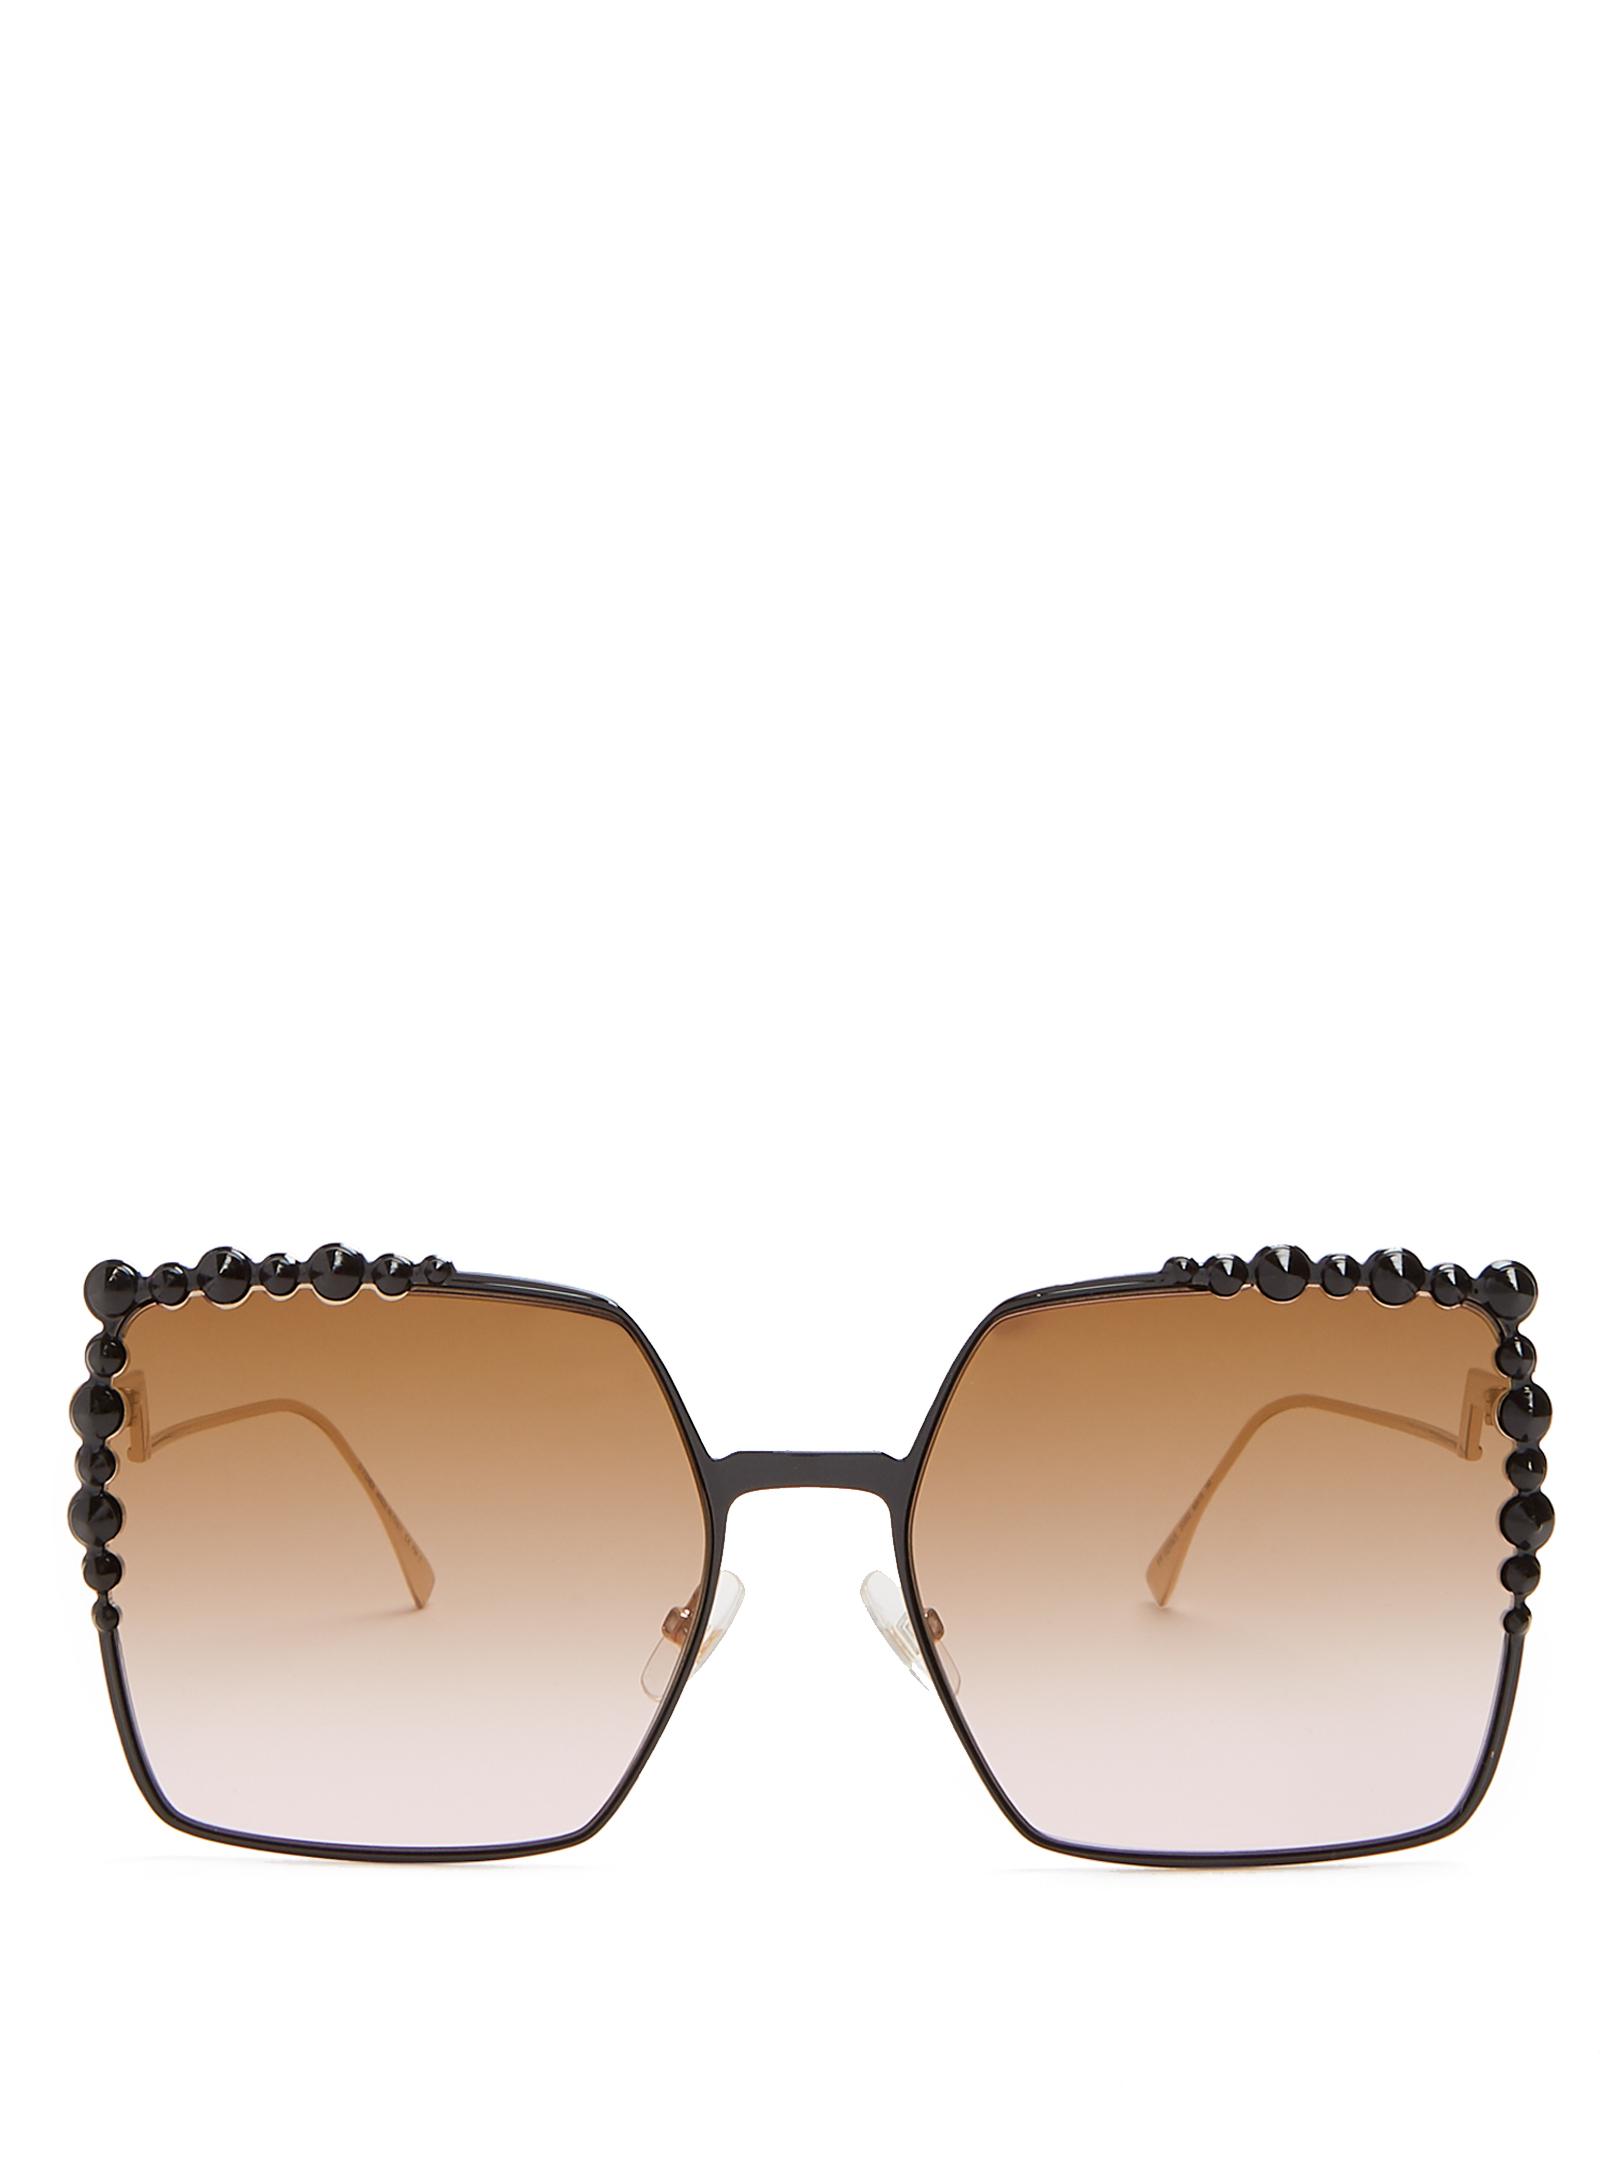 Fendi Fine Square Sunglasses in Black - Fendi